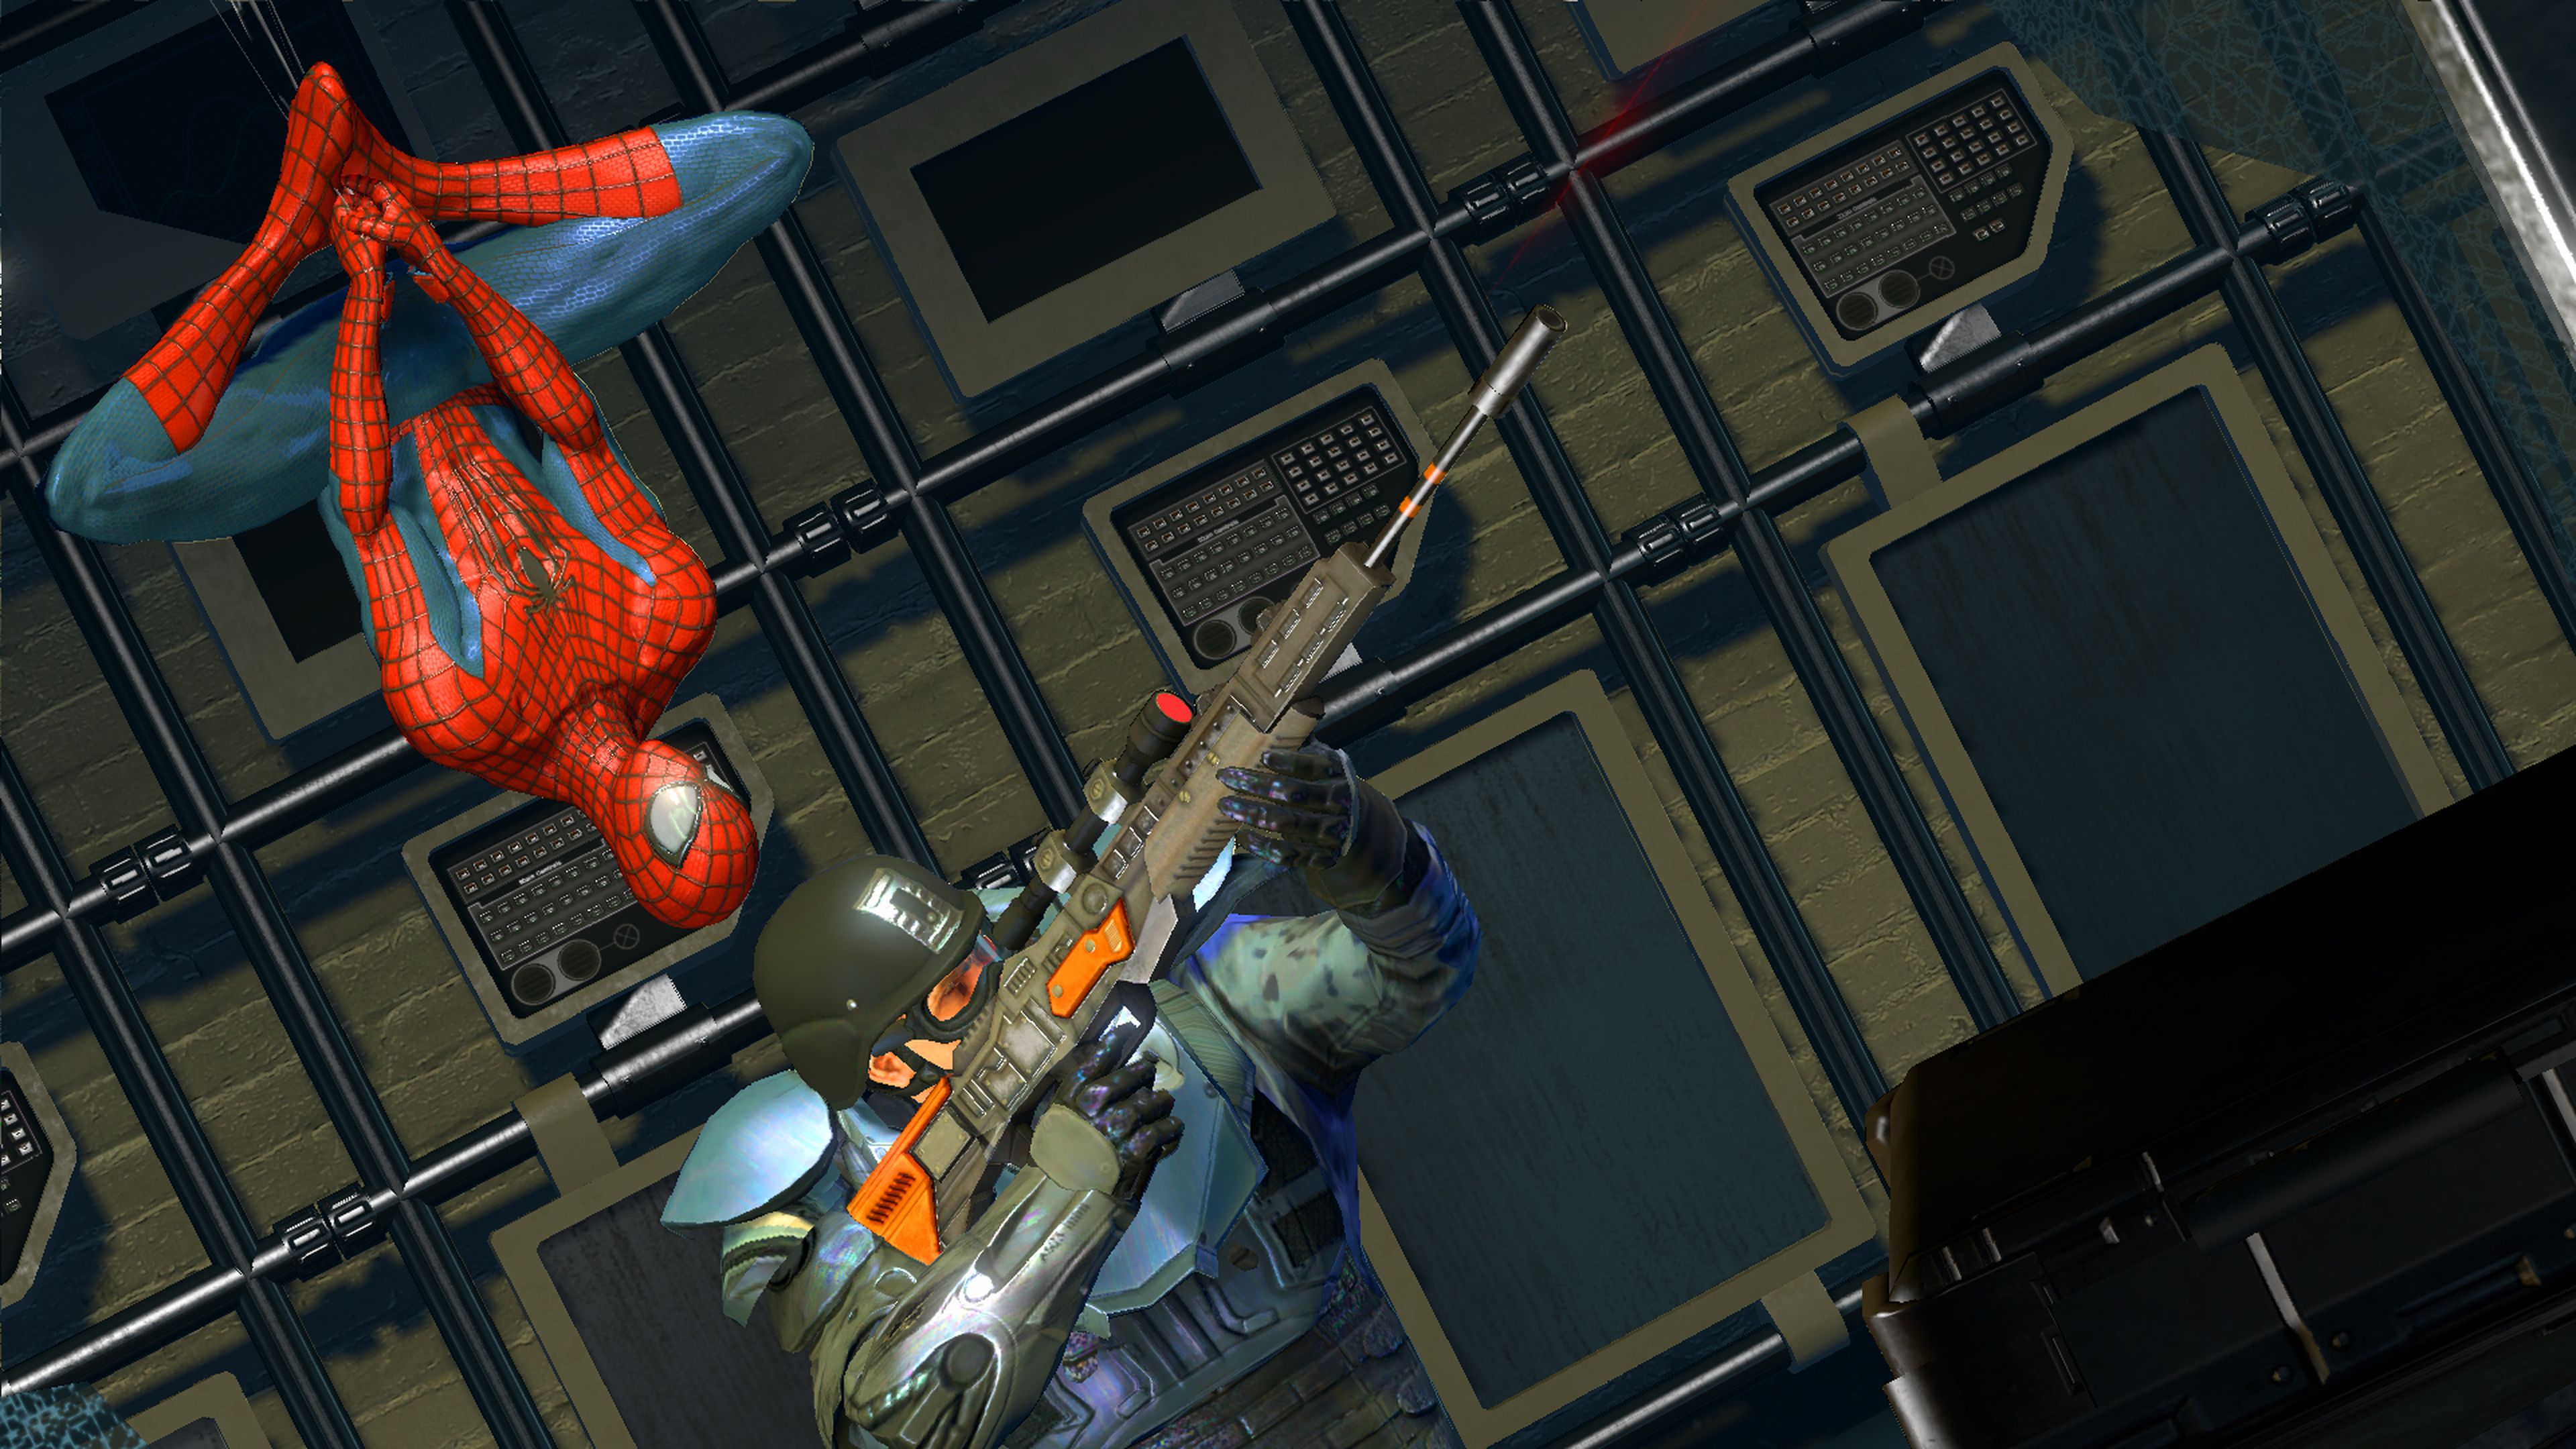 Игра спаси паука. The amazing Spider-man (игра, 2012). The amazing Spider-man 2 (игра, 2014). Человек паук Амейзинг 2. Spider man 2014 игра.